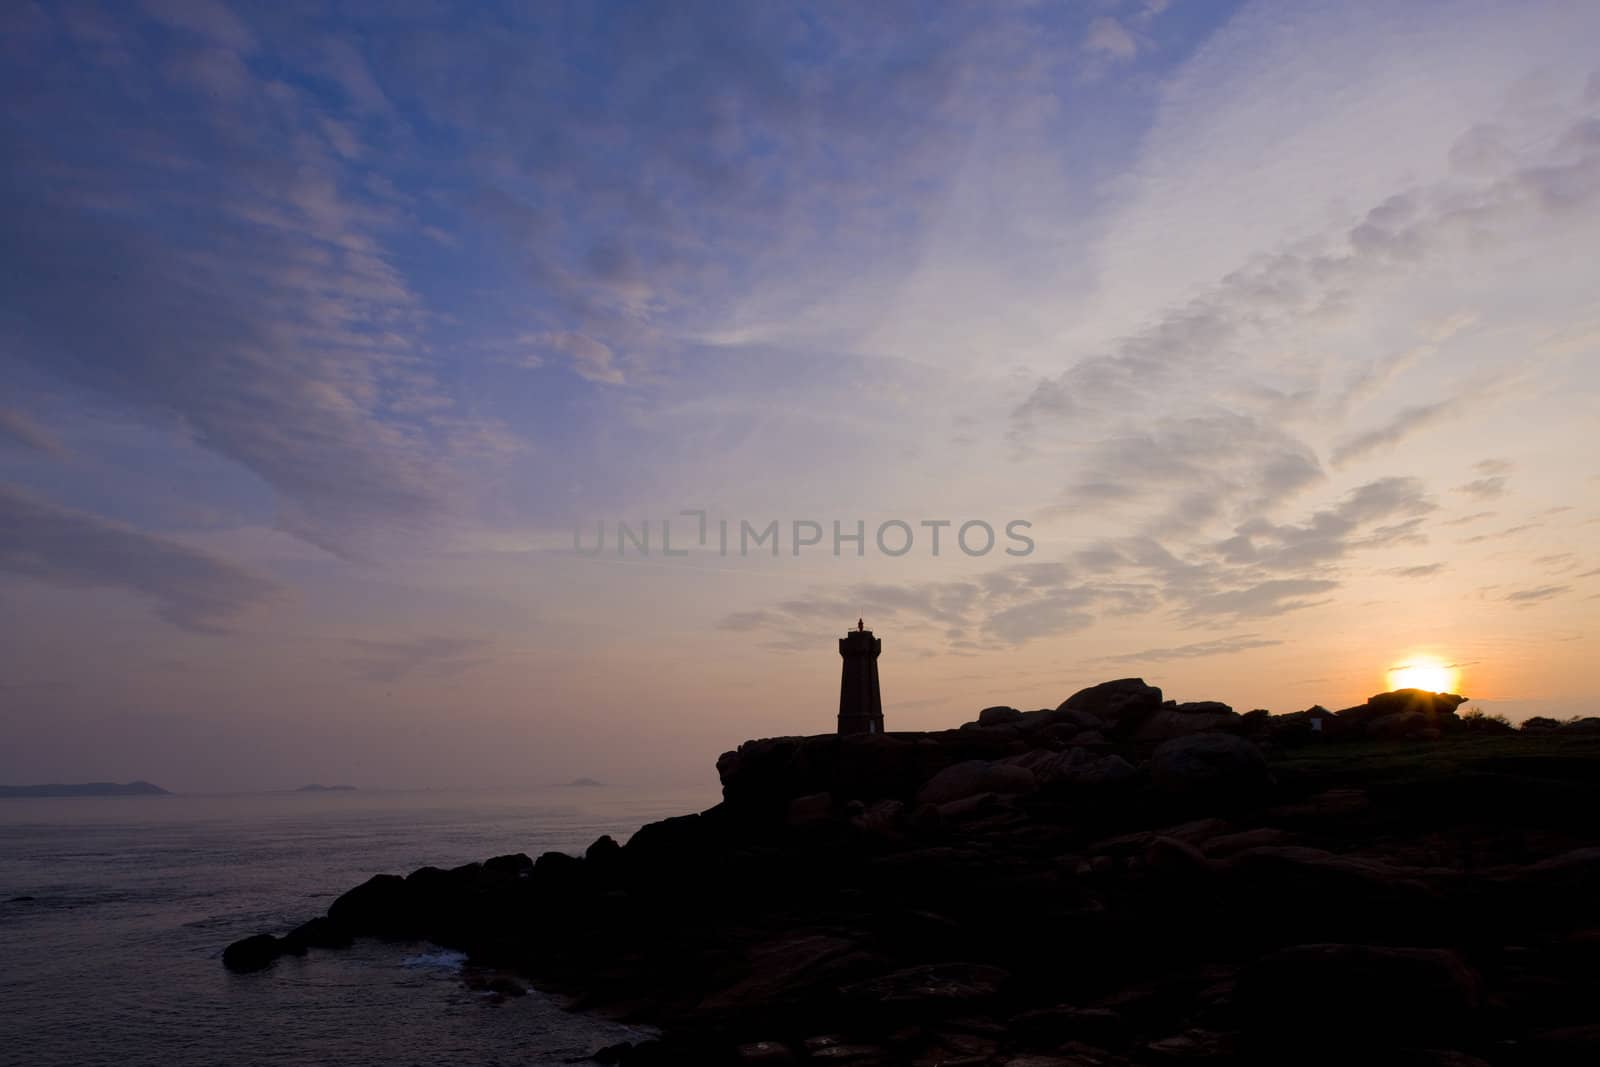 Pors Kamor lighthouse, Ploumanac'h, Brittany, France by phbcz